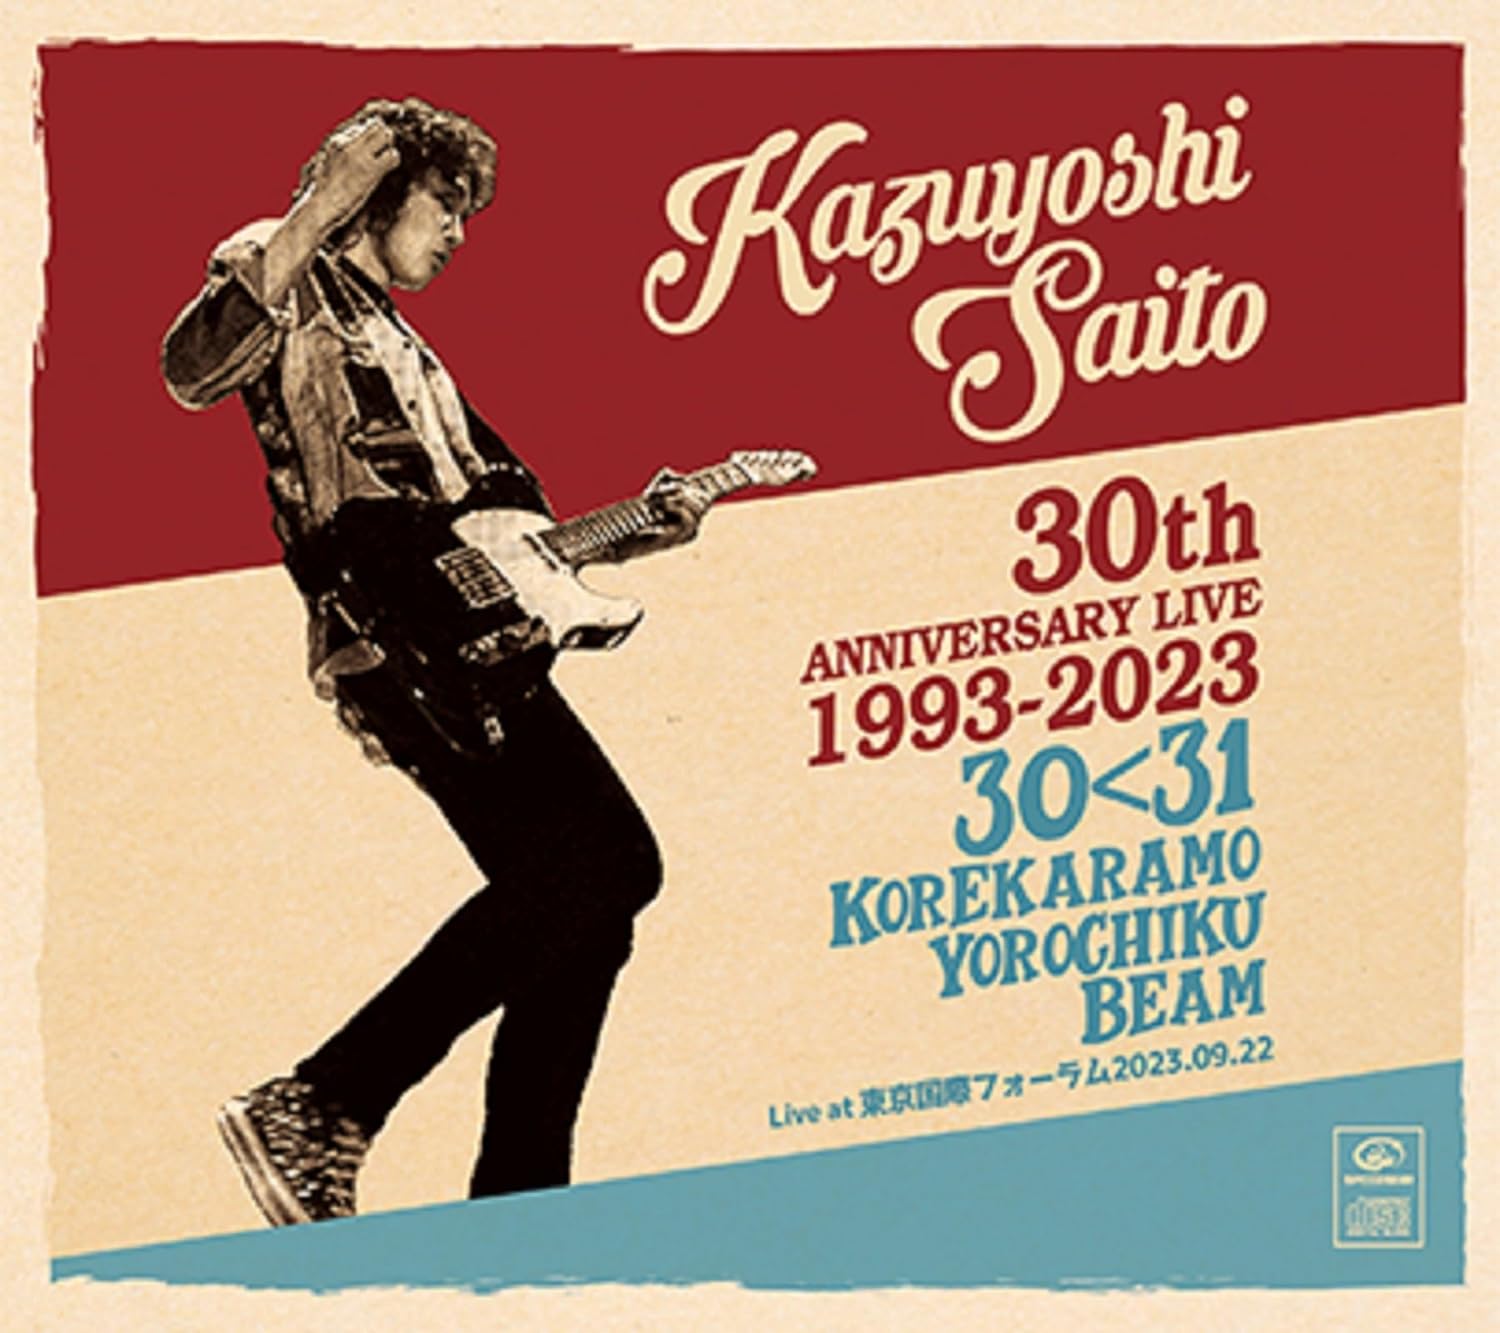 斉藤和義／KAZUYOSHI SAITO 30th Anniversary Live 1993-2023 30＜31 ～これからもヨロチクビーム～ Live at 東京国際フォーラム2023.09.22 (初回限定盤) (CD＋グッズ) VIZL-2232 2024/3/27発売